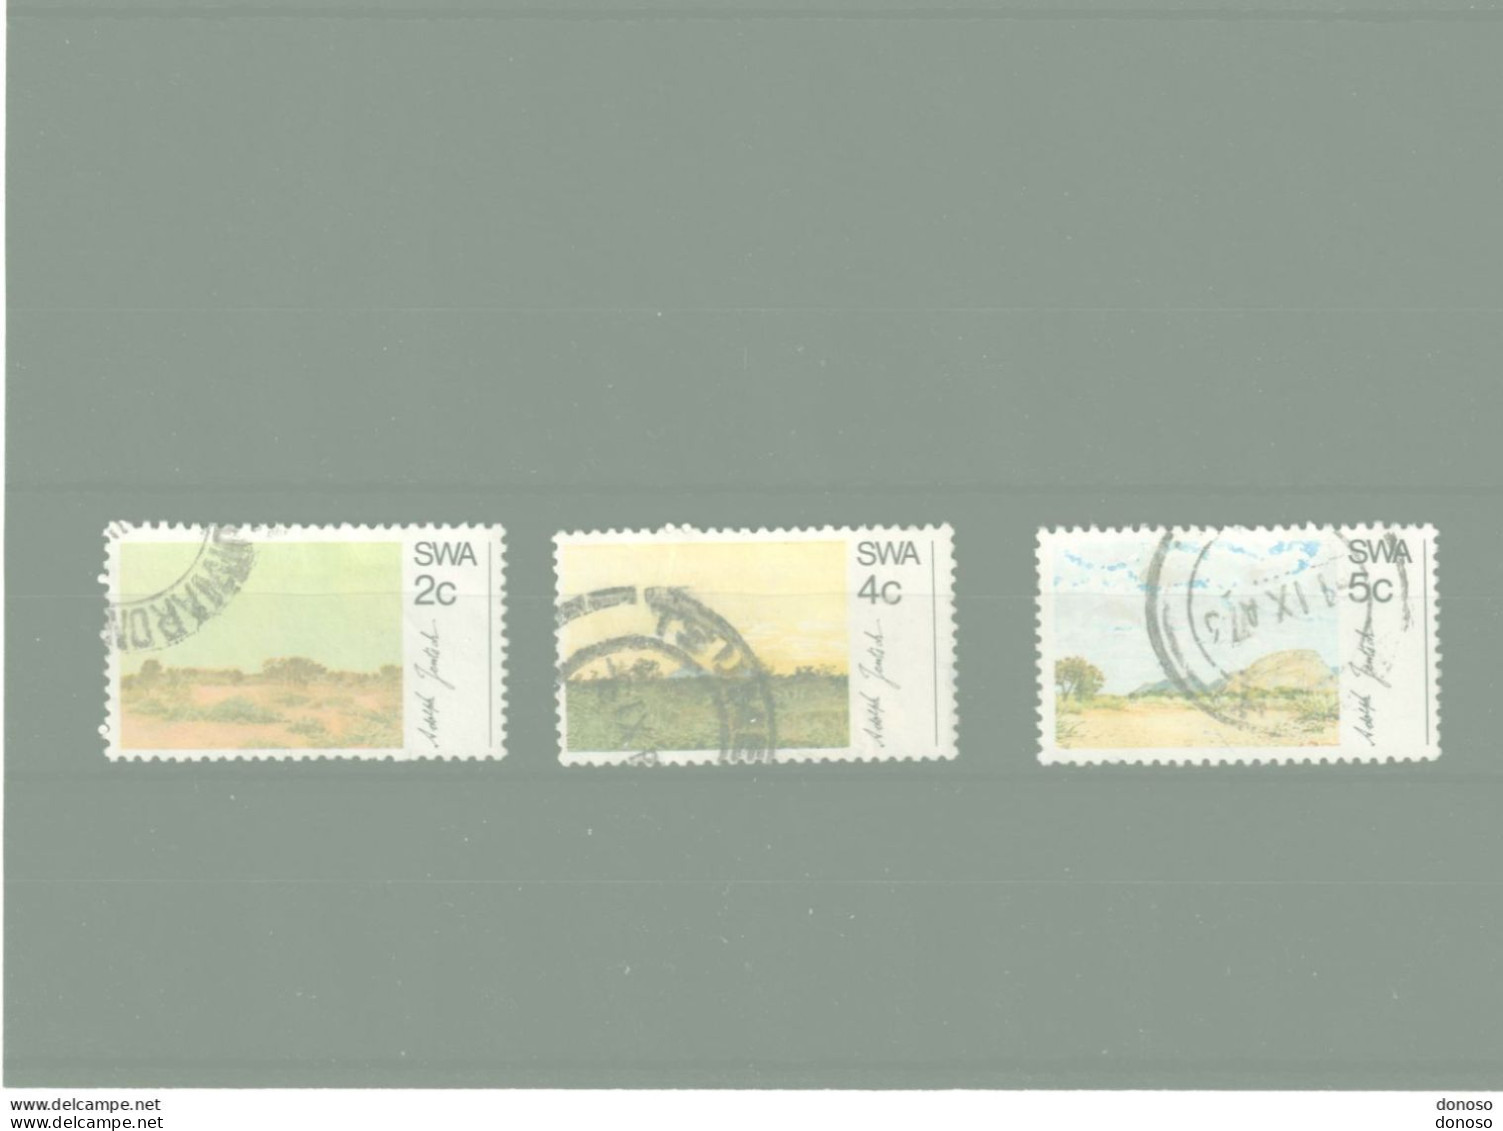 SWA SUD OUEST AFRICAIN 1973 Tableaux De Jentsch Yvert 313-315 Oblitéré Cote Yv 5 Euros - Südwestafrika (1923-1990)